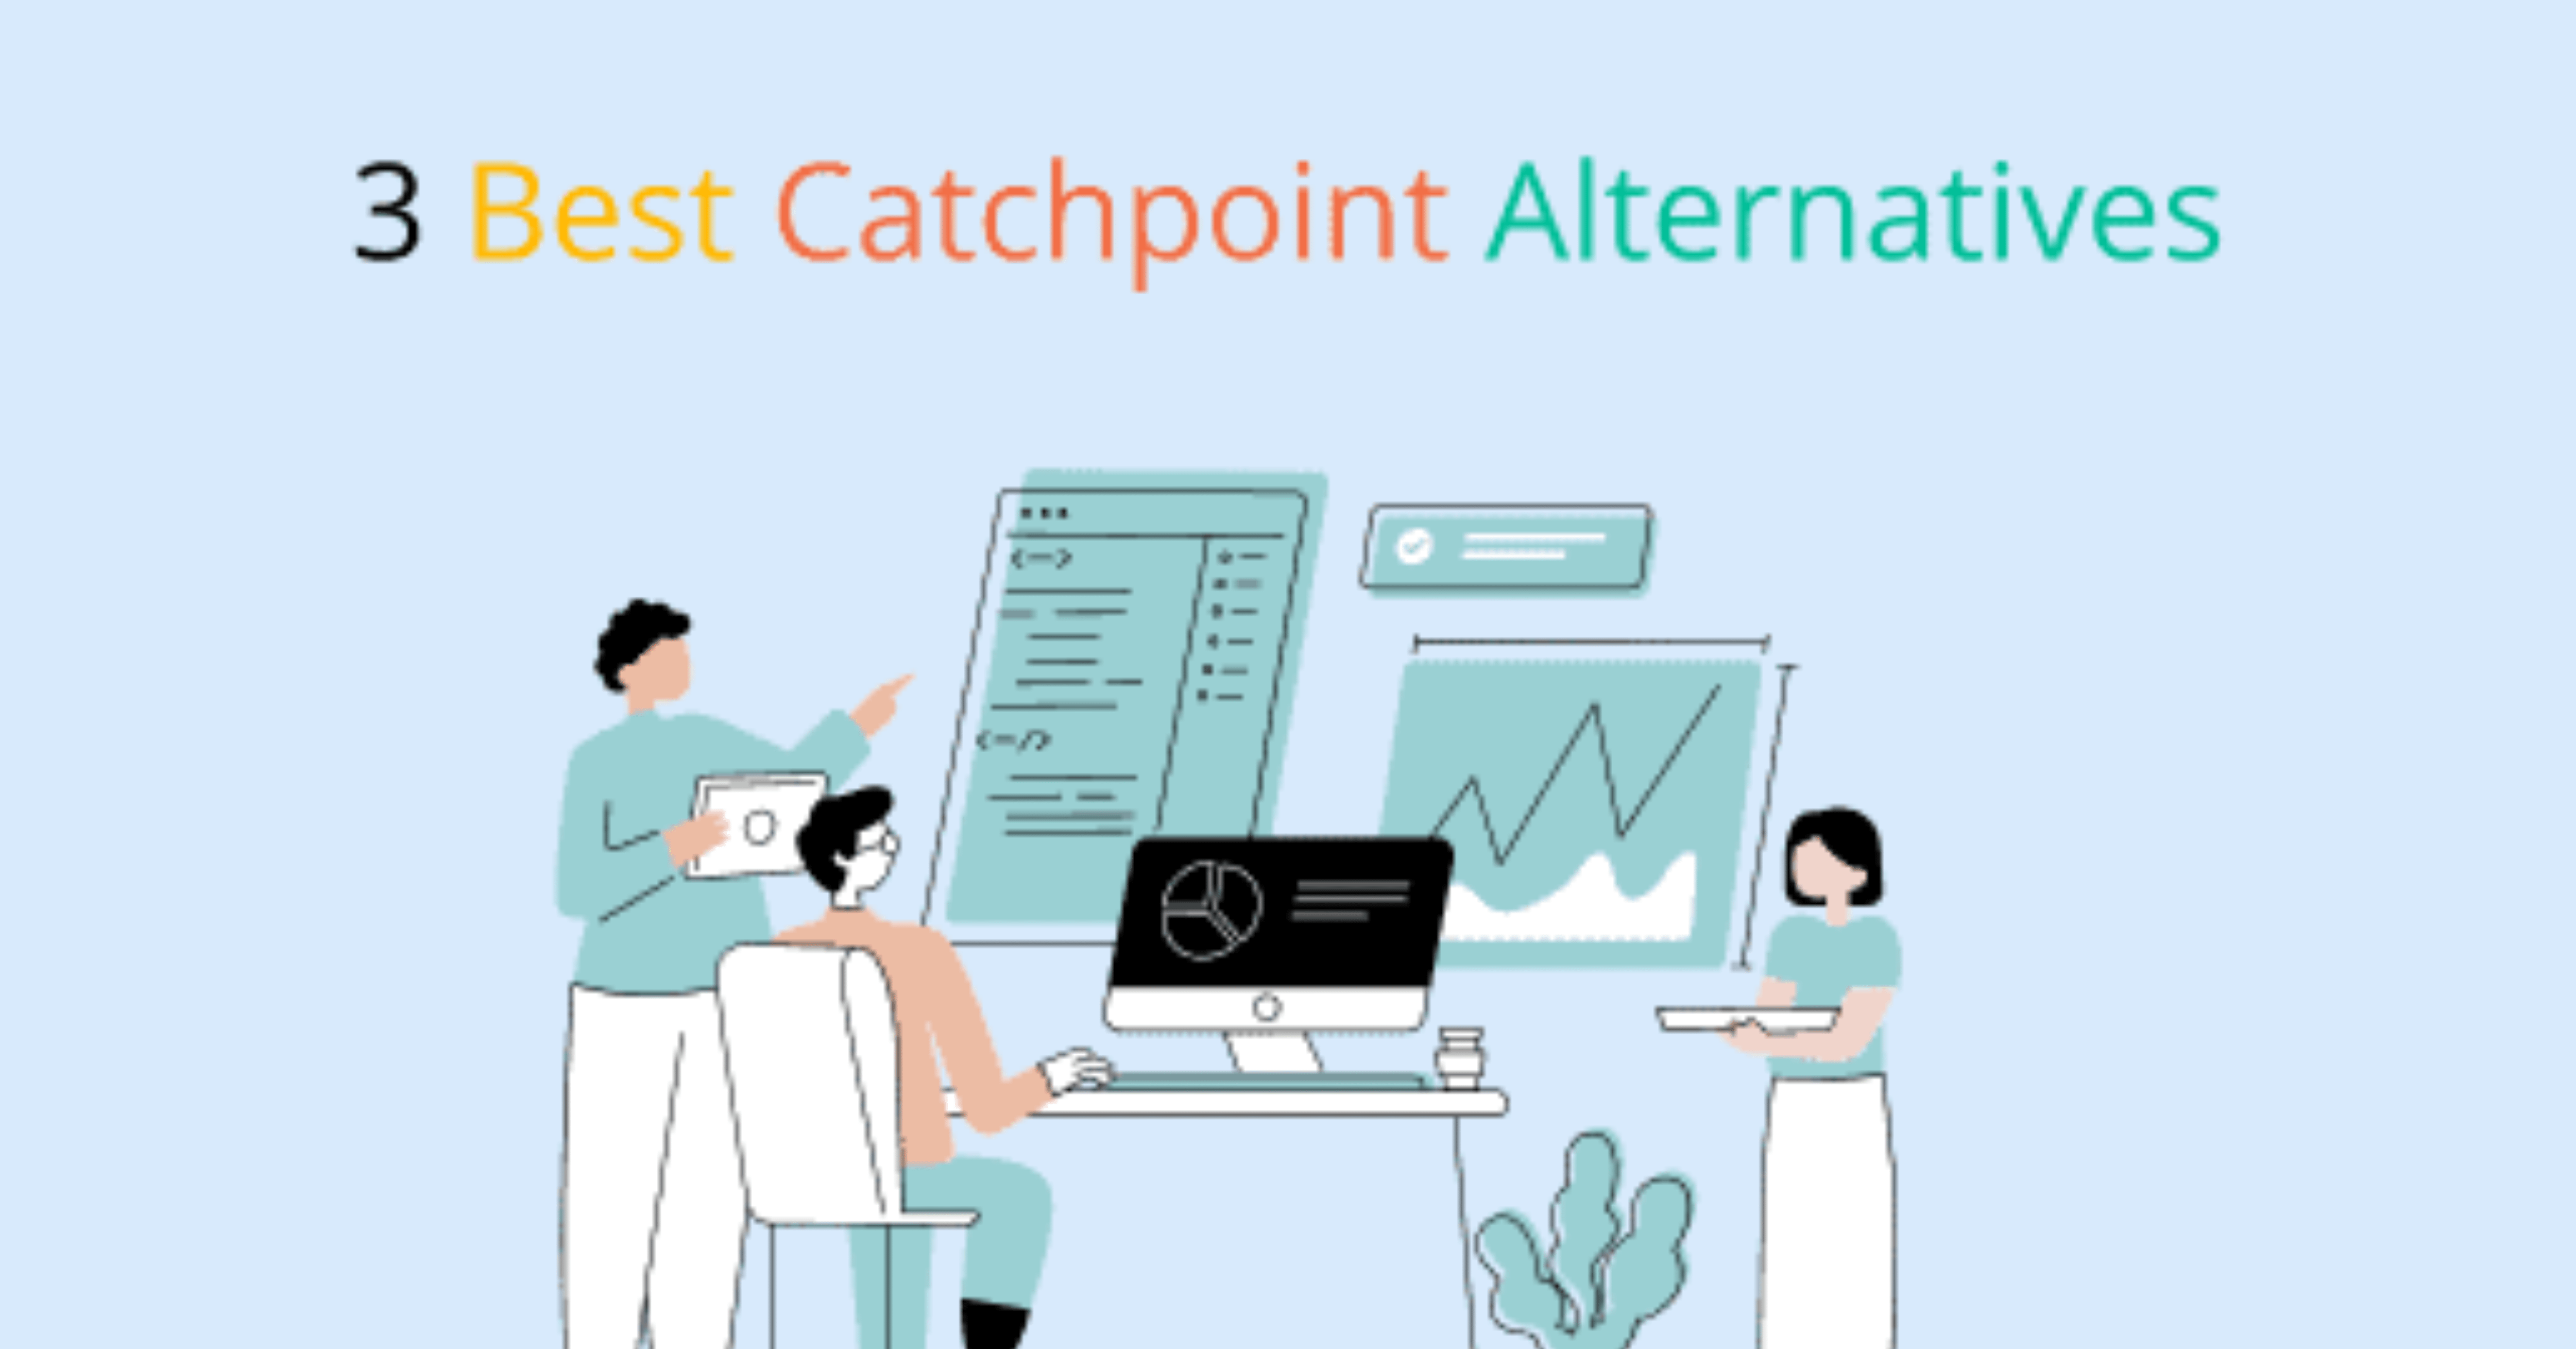 Best Catchpoint Alternatives